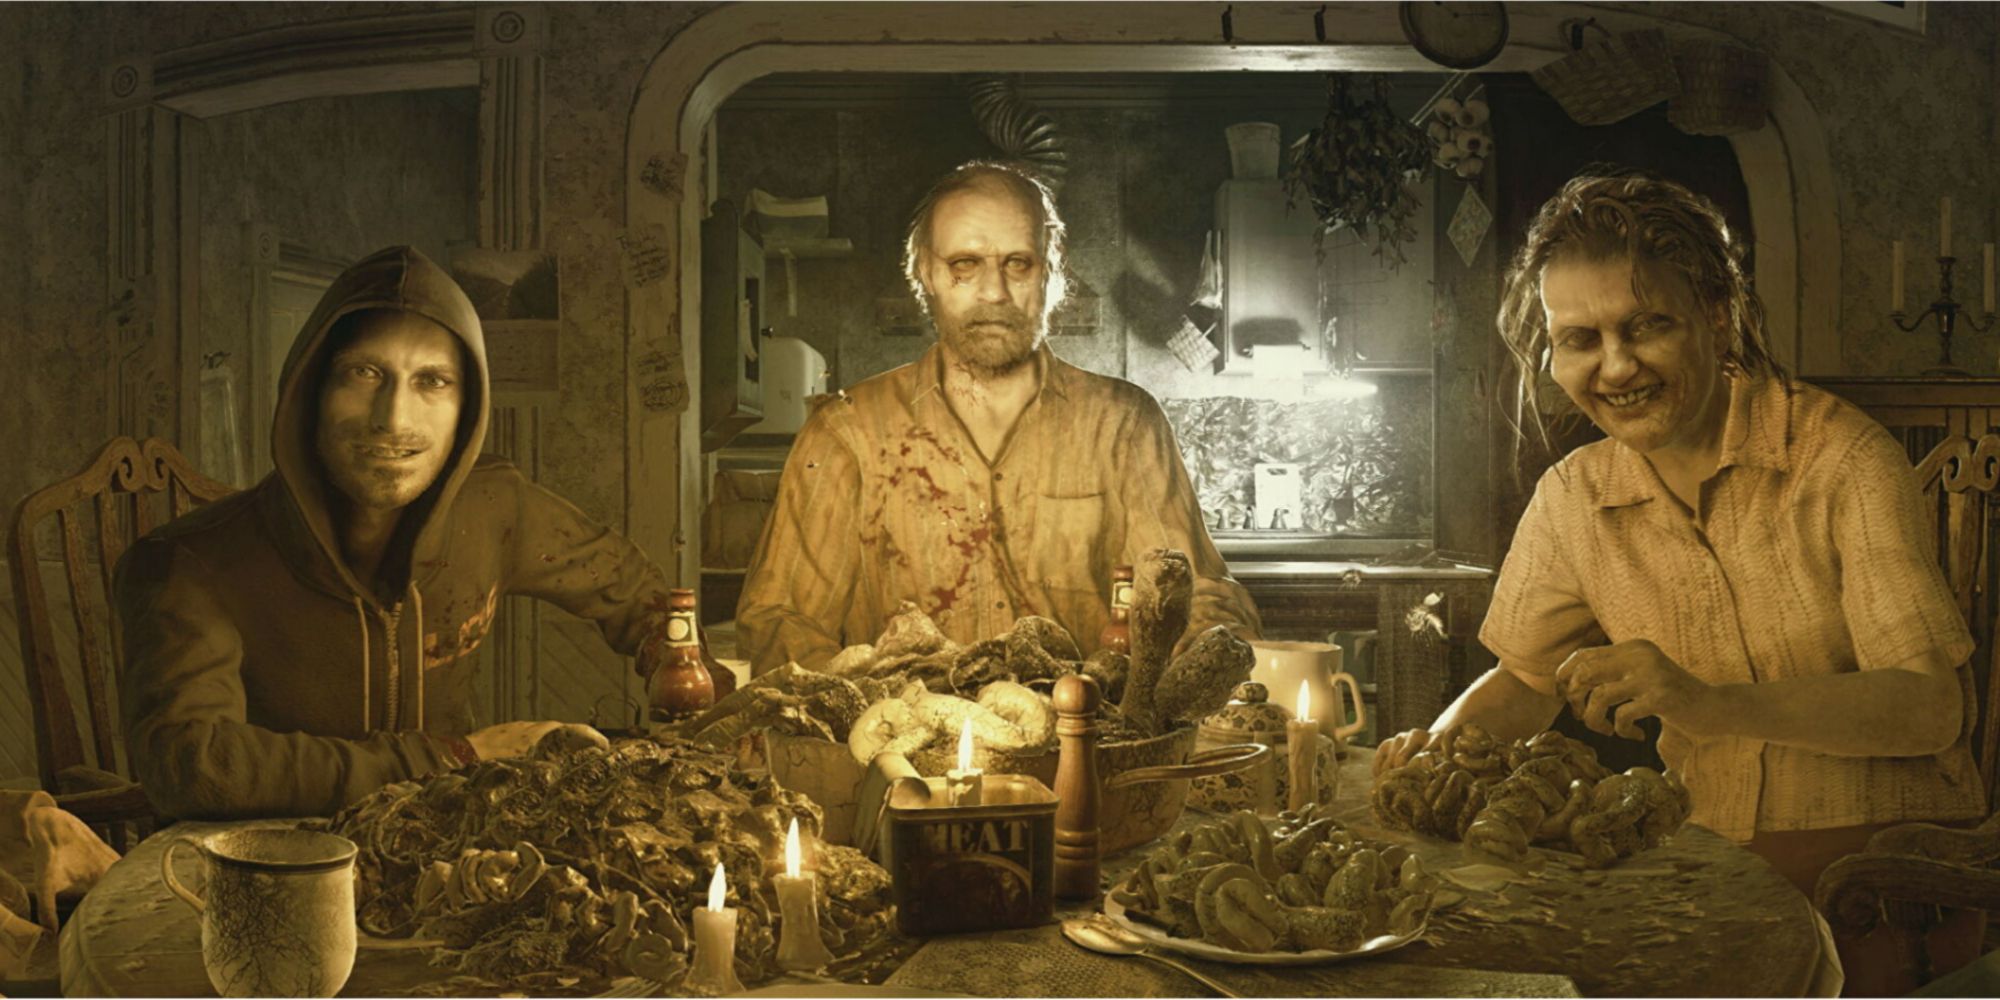 The Baker Family as seen in Resident Evil VII: Biohazard